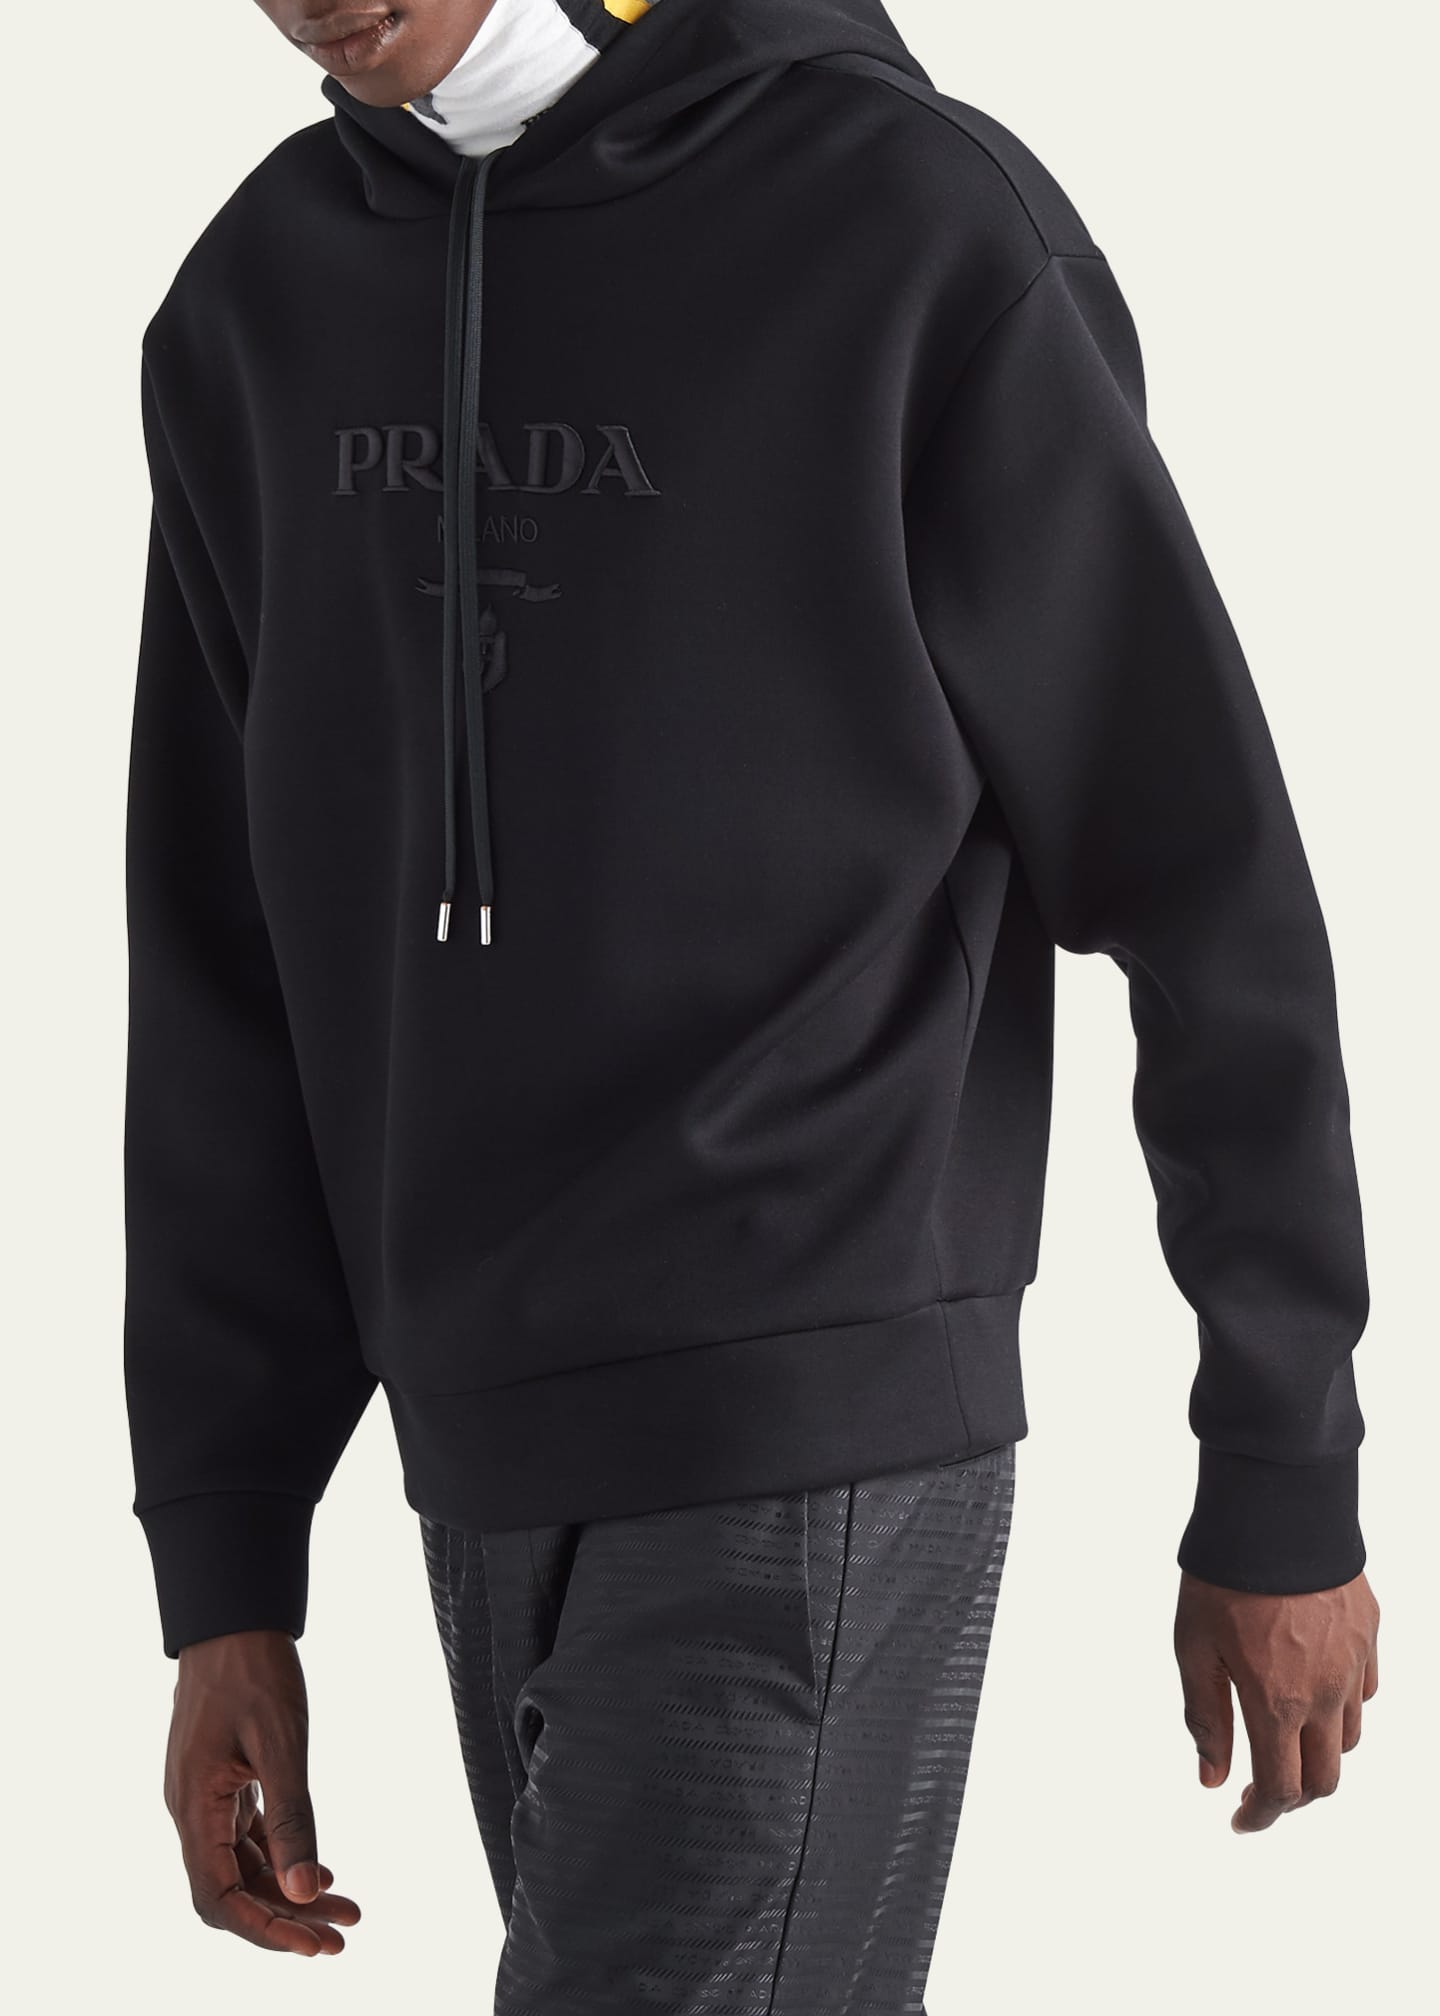 Prada Men's Embroidered Tech Fleece Sweatshirt - Bergdorf Goodman